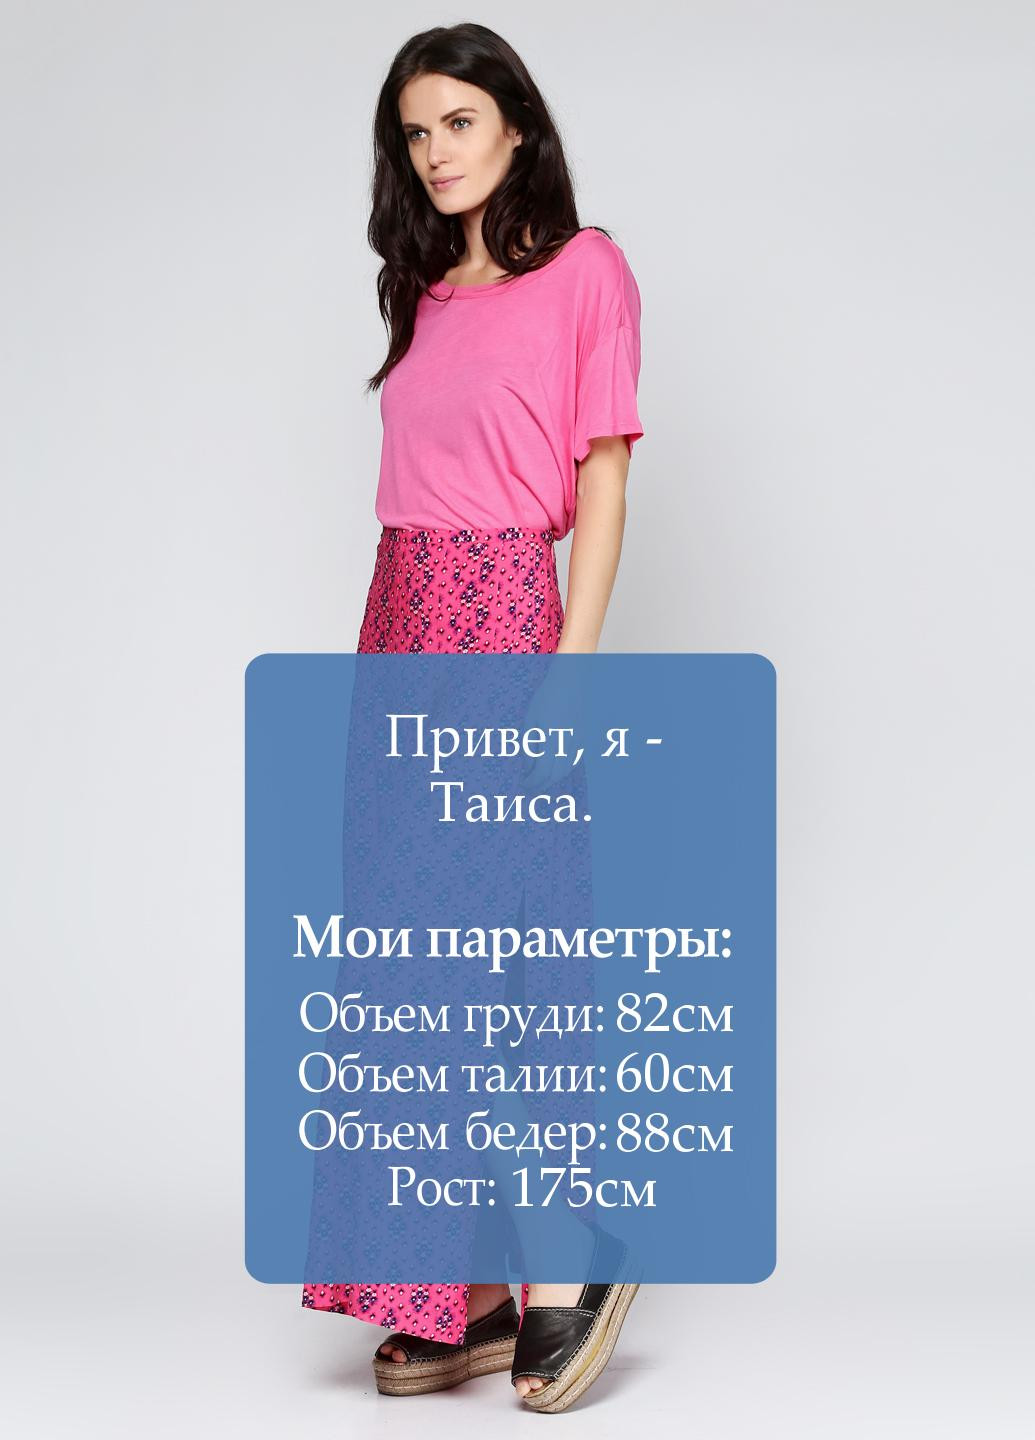 Розовая кэжуал цветочной расцветки юбка Juicy Couture макси